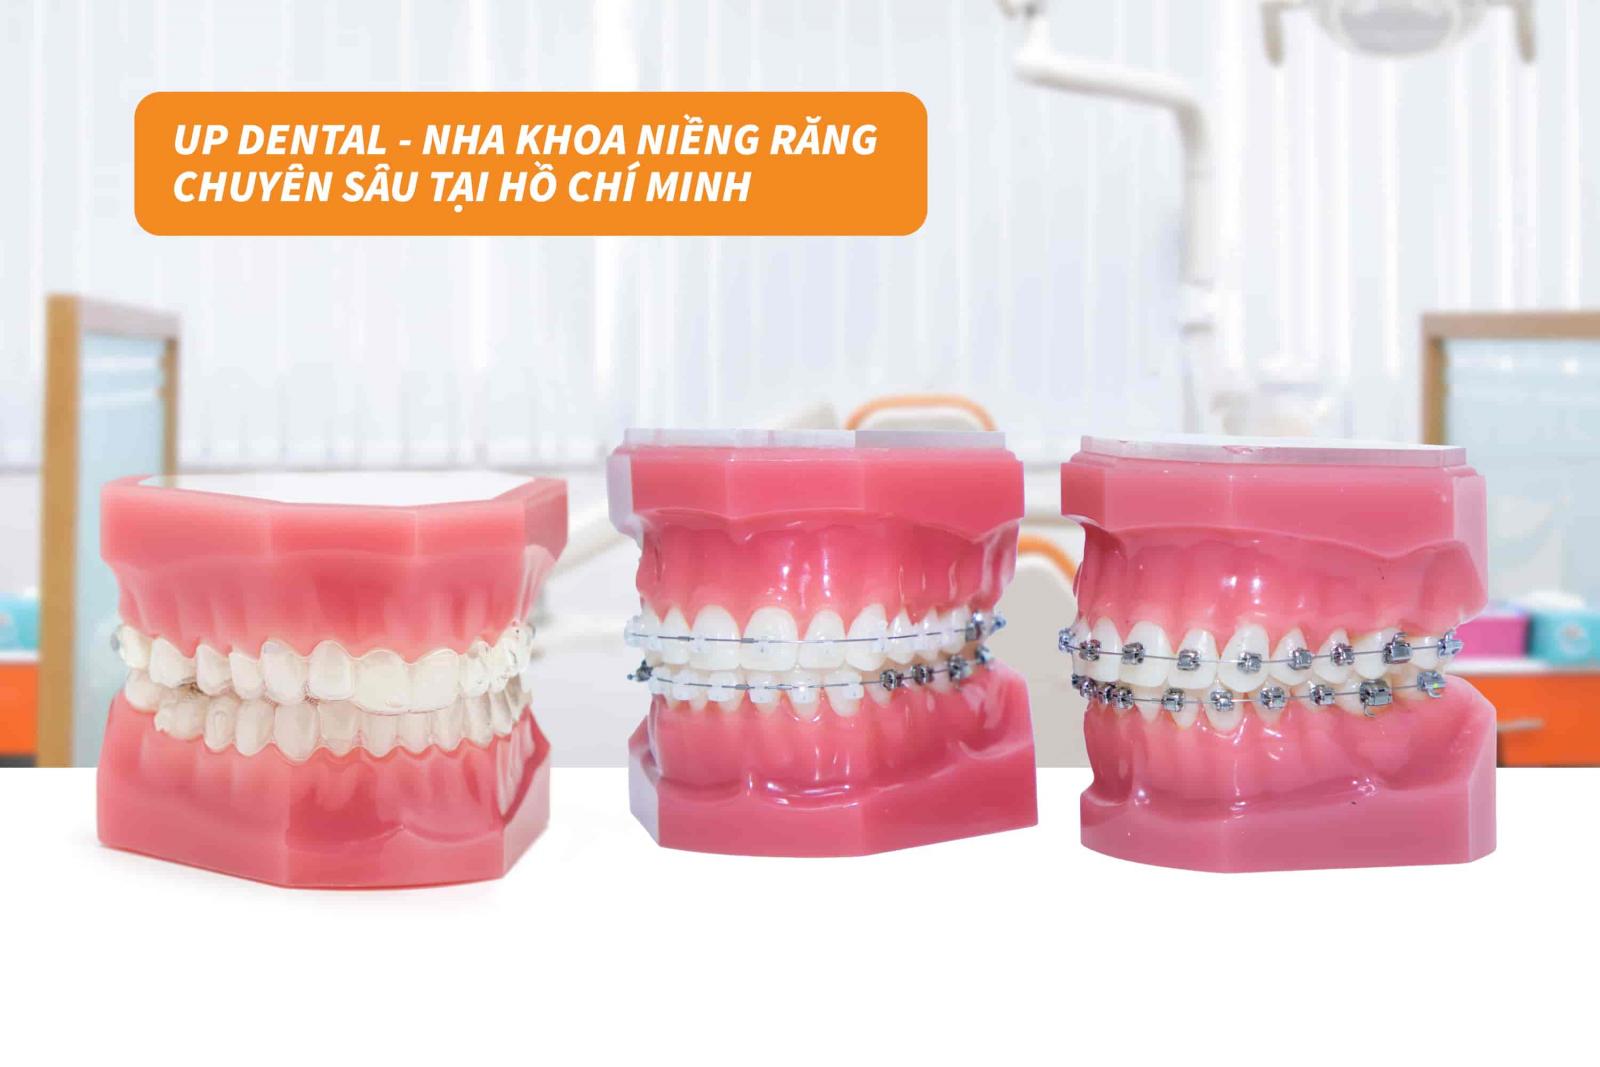 Up Dental - Nha khoa niềng răng chuyên sâu tại Hồ Chí Minh